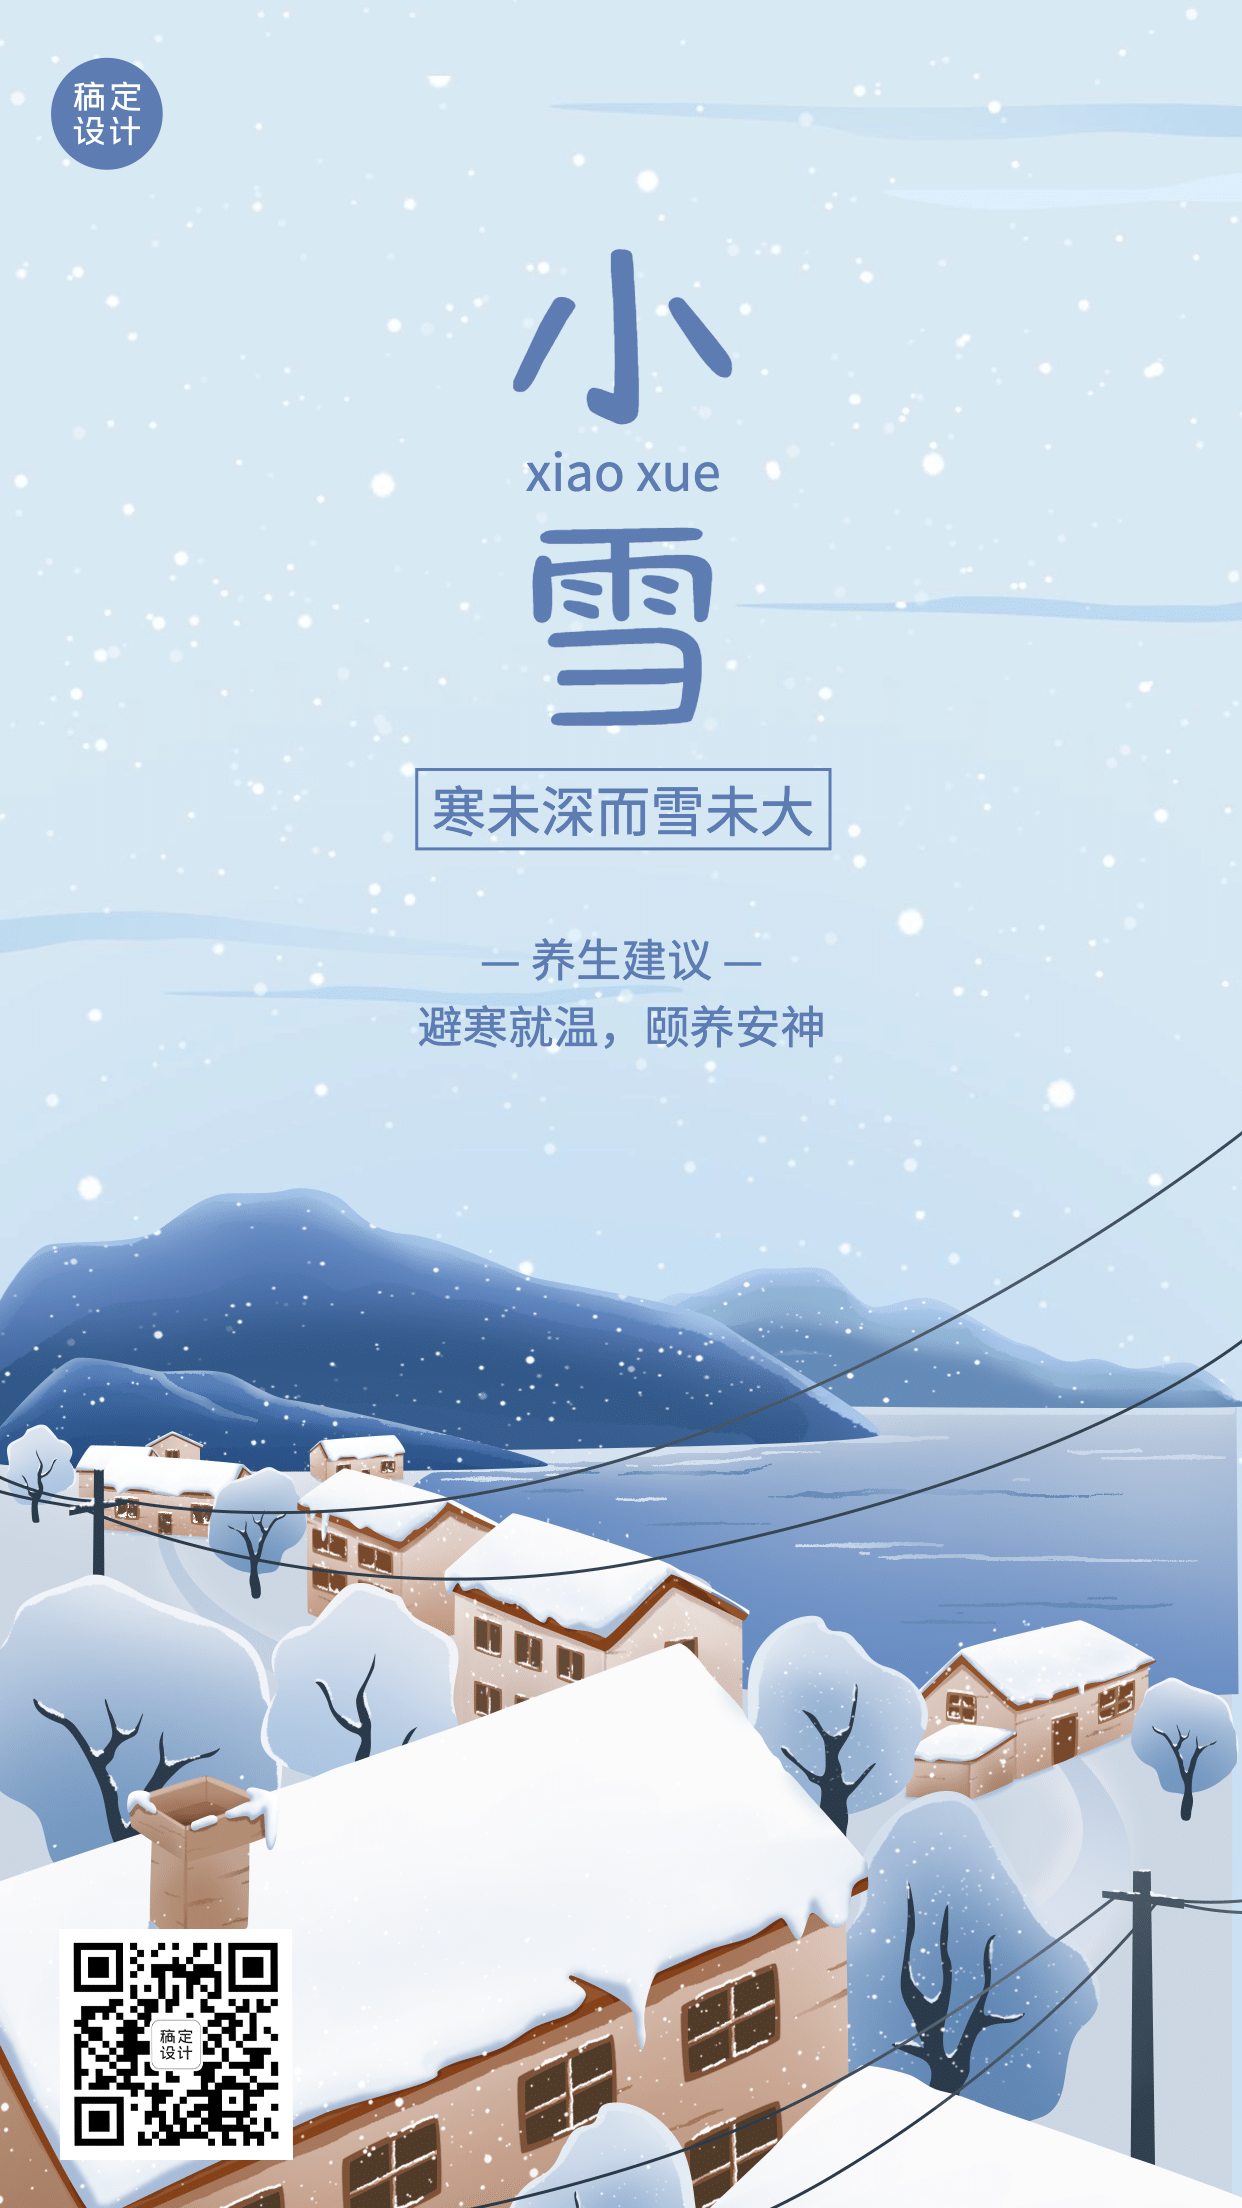  小雪节气祝福问候手绘插画手机海报